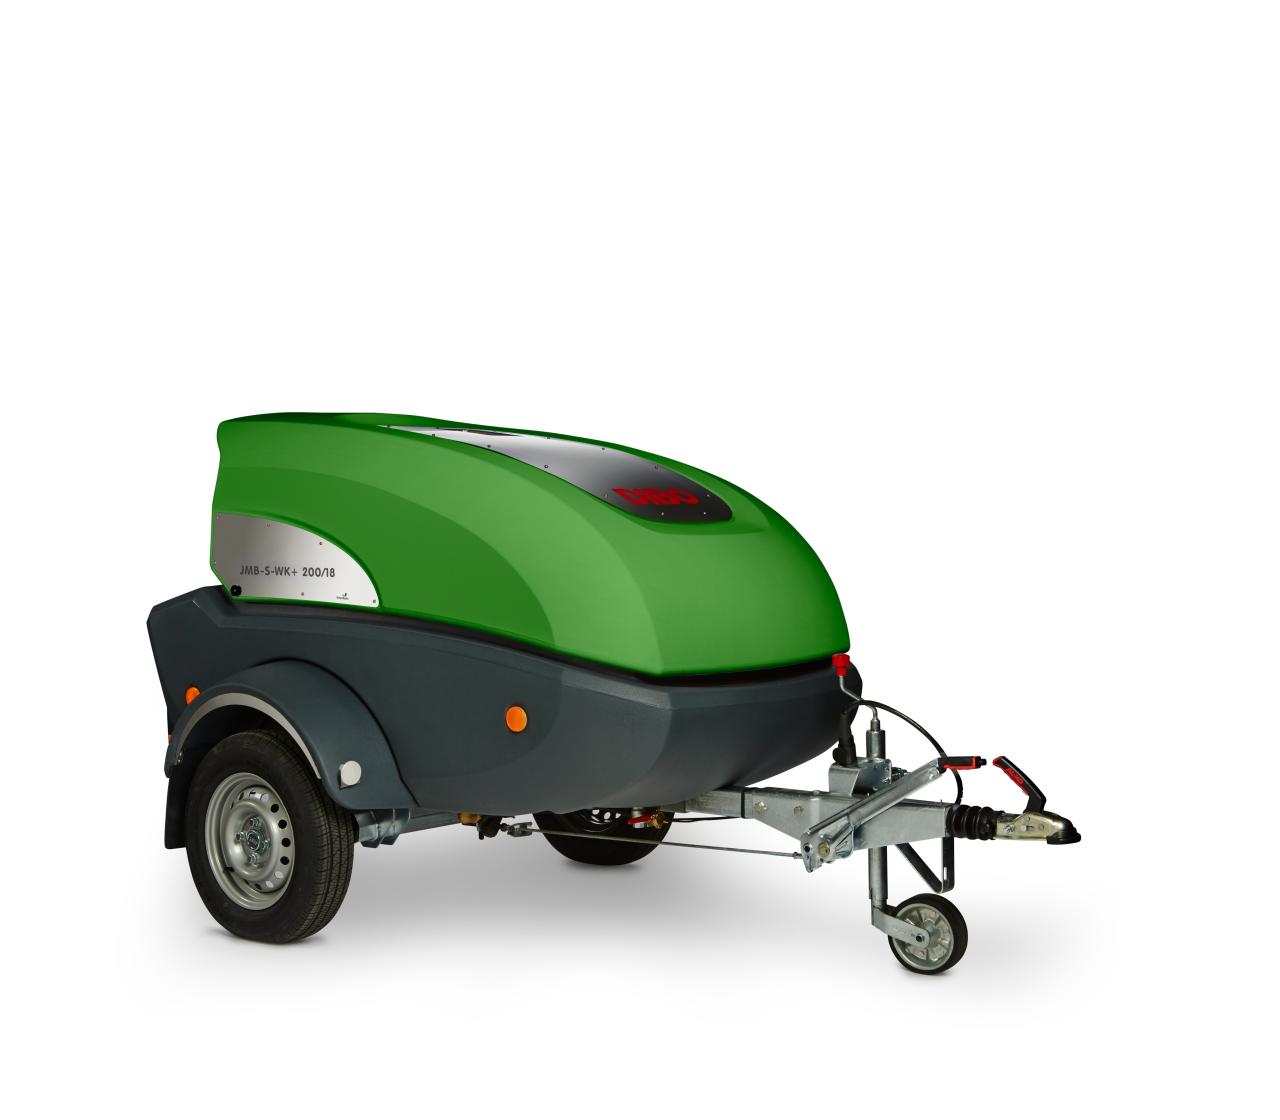 DiBO JMB-S-WK+ compacte milieuvriendelijke mos & onkruidbestrijder op trailer uitgerust met de meest moderne & groene technologieën